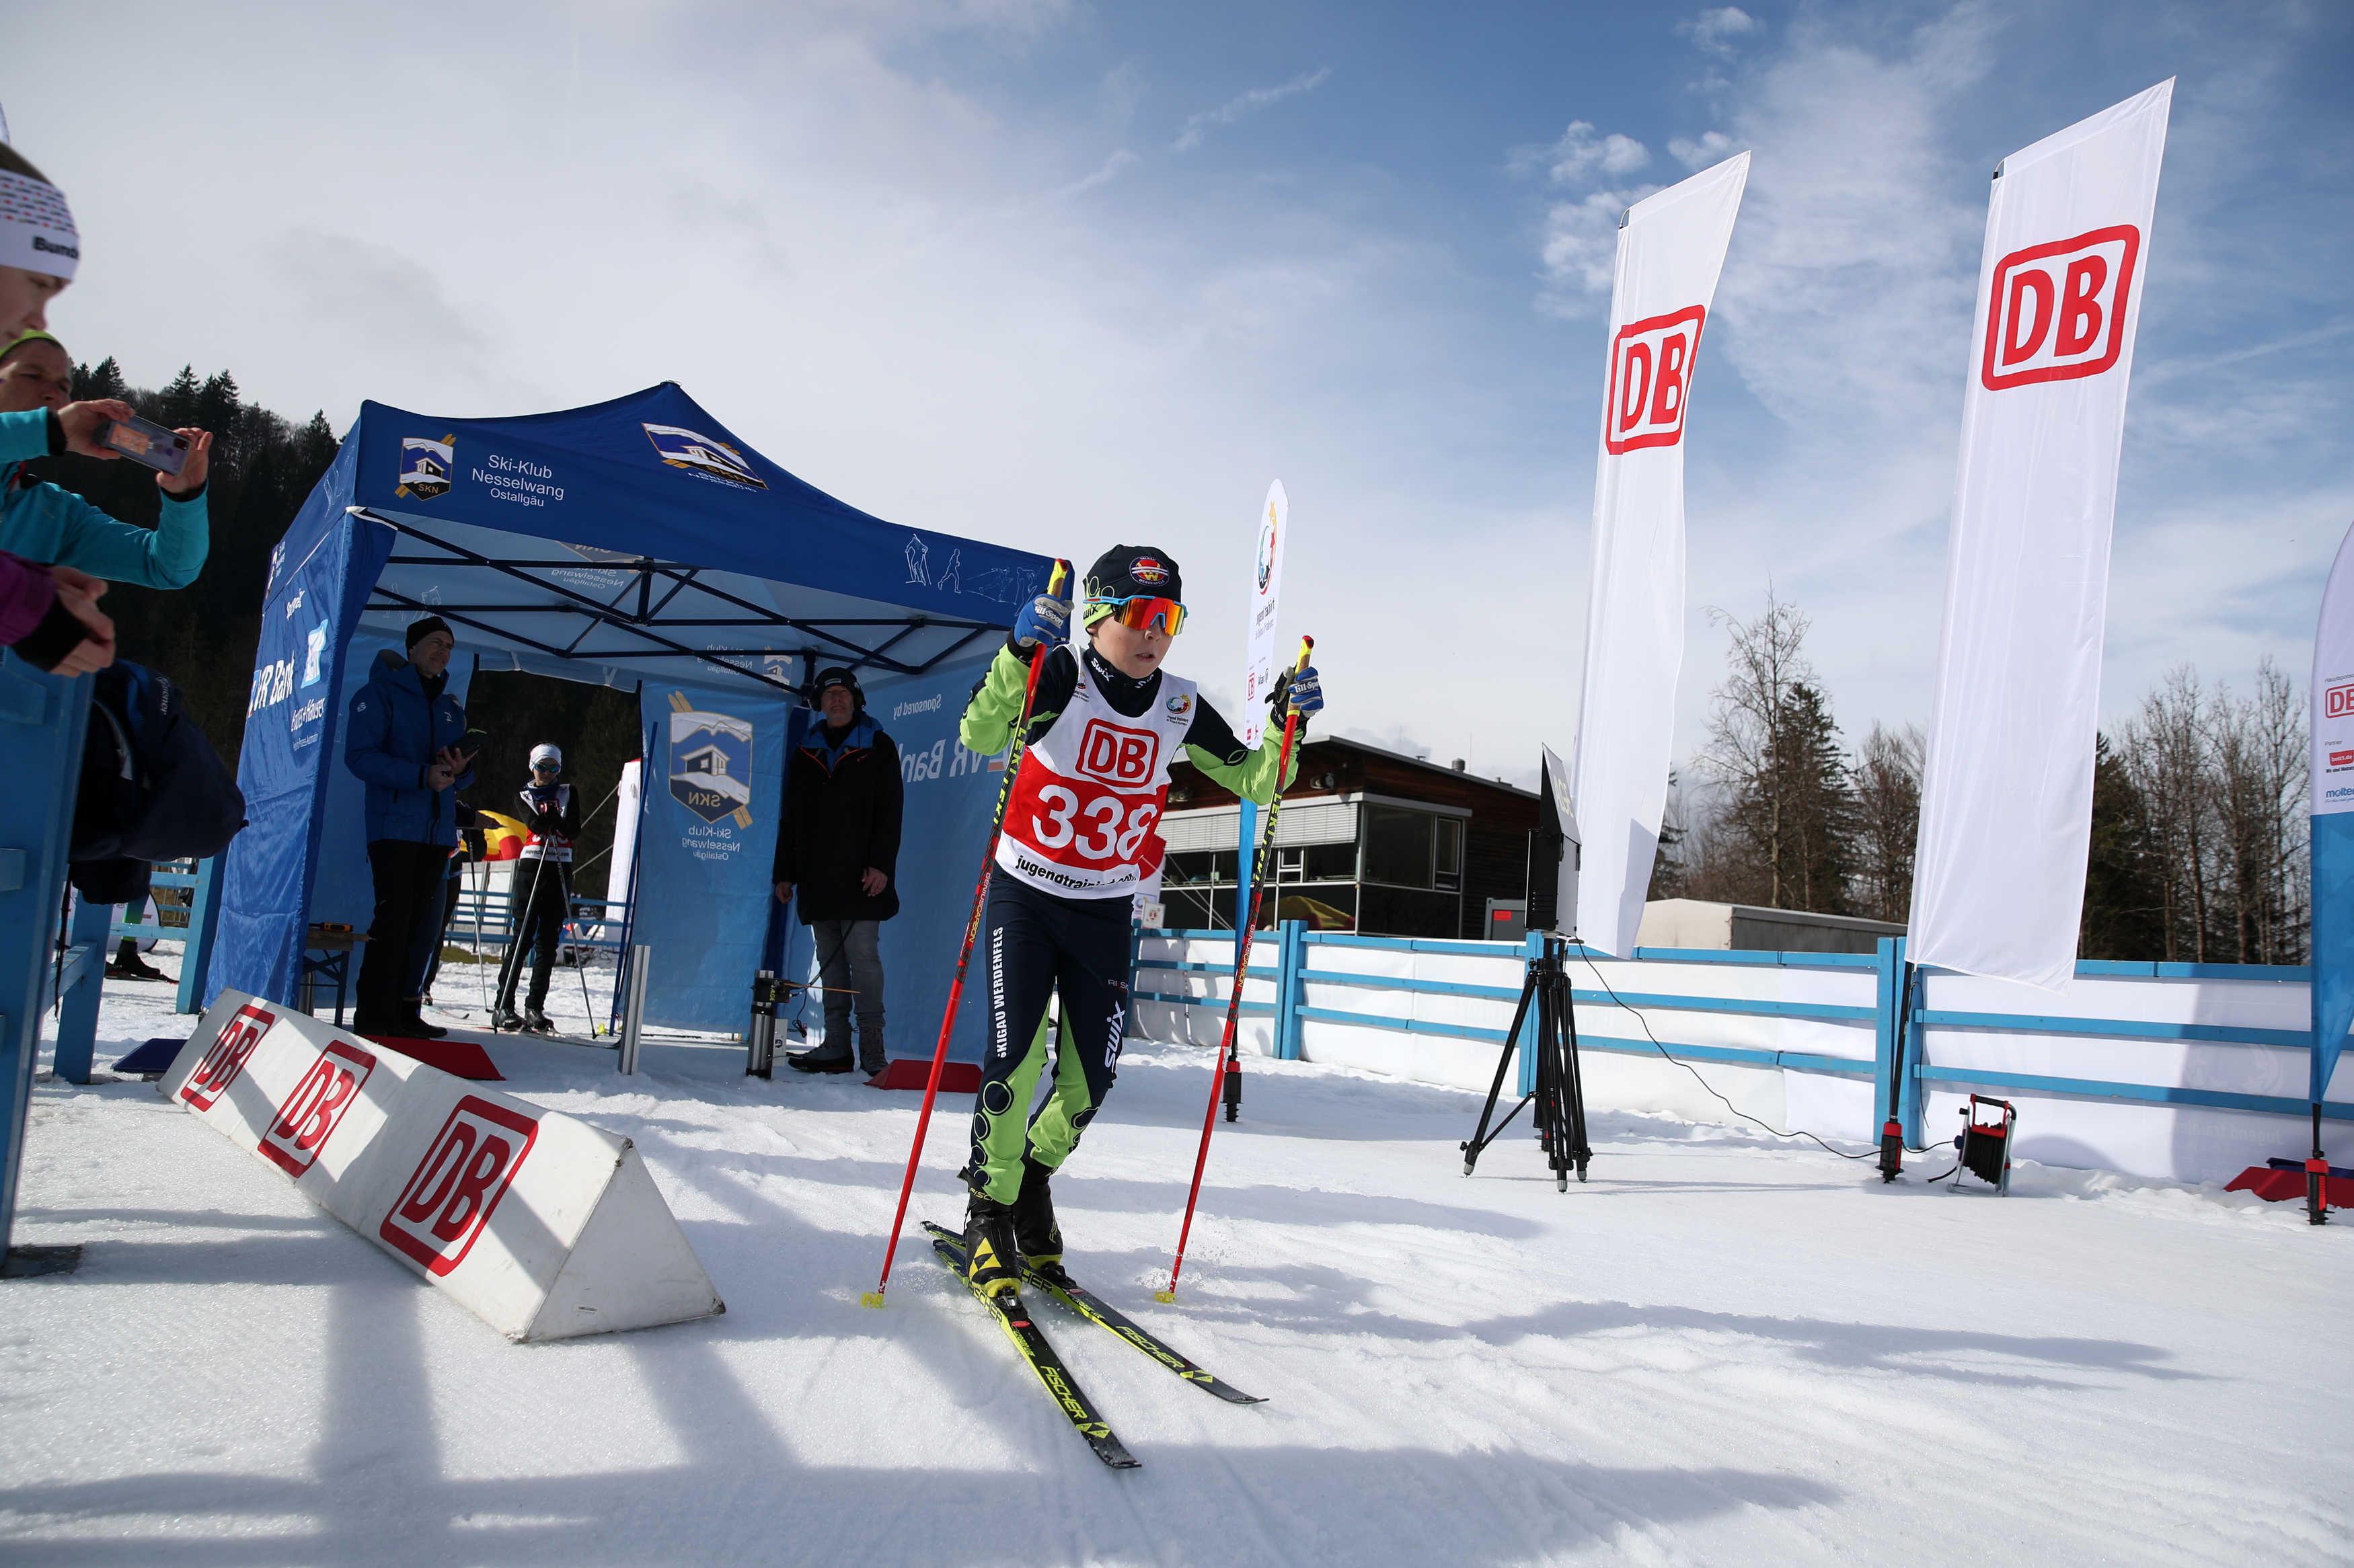 Jugend trainiert für Olympia und Paralympics - Winterfinale 2024 - Skilanglauf